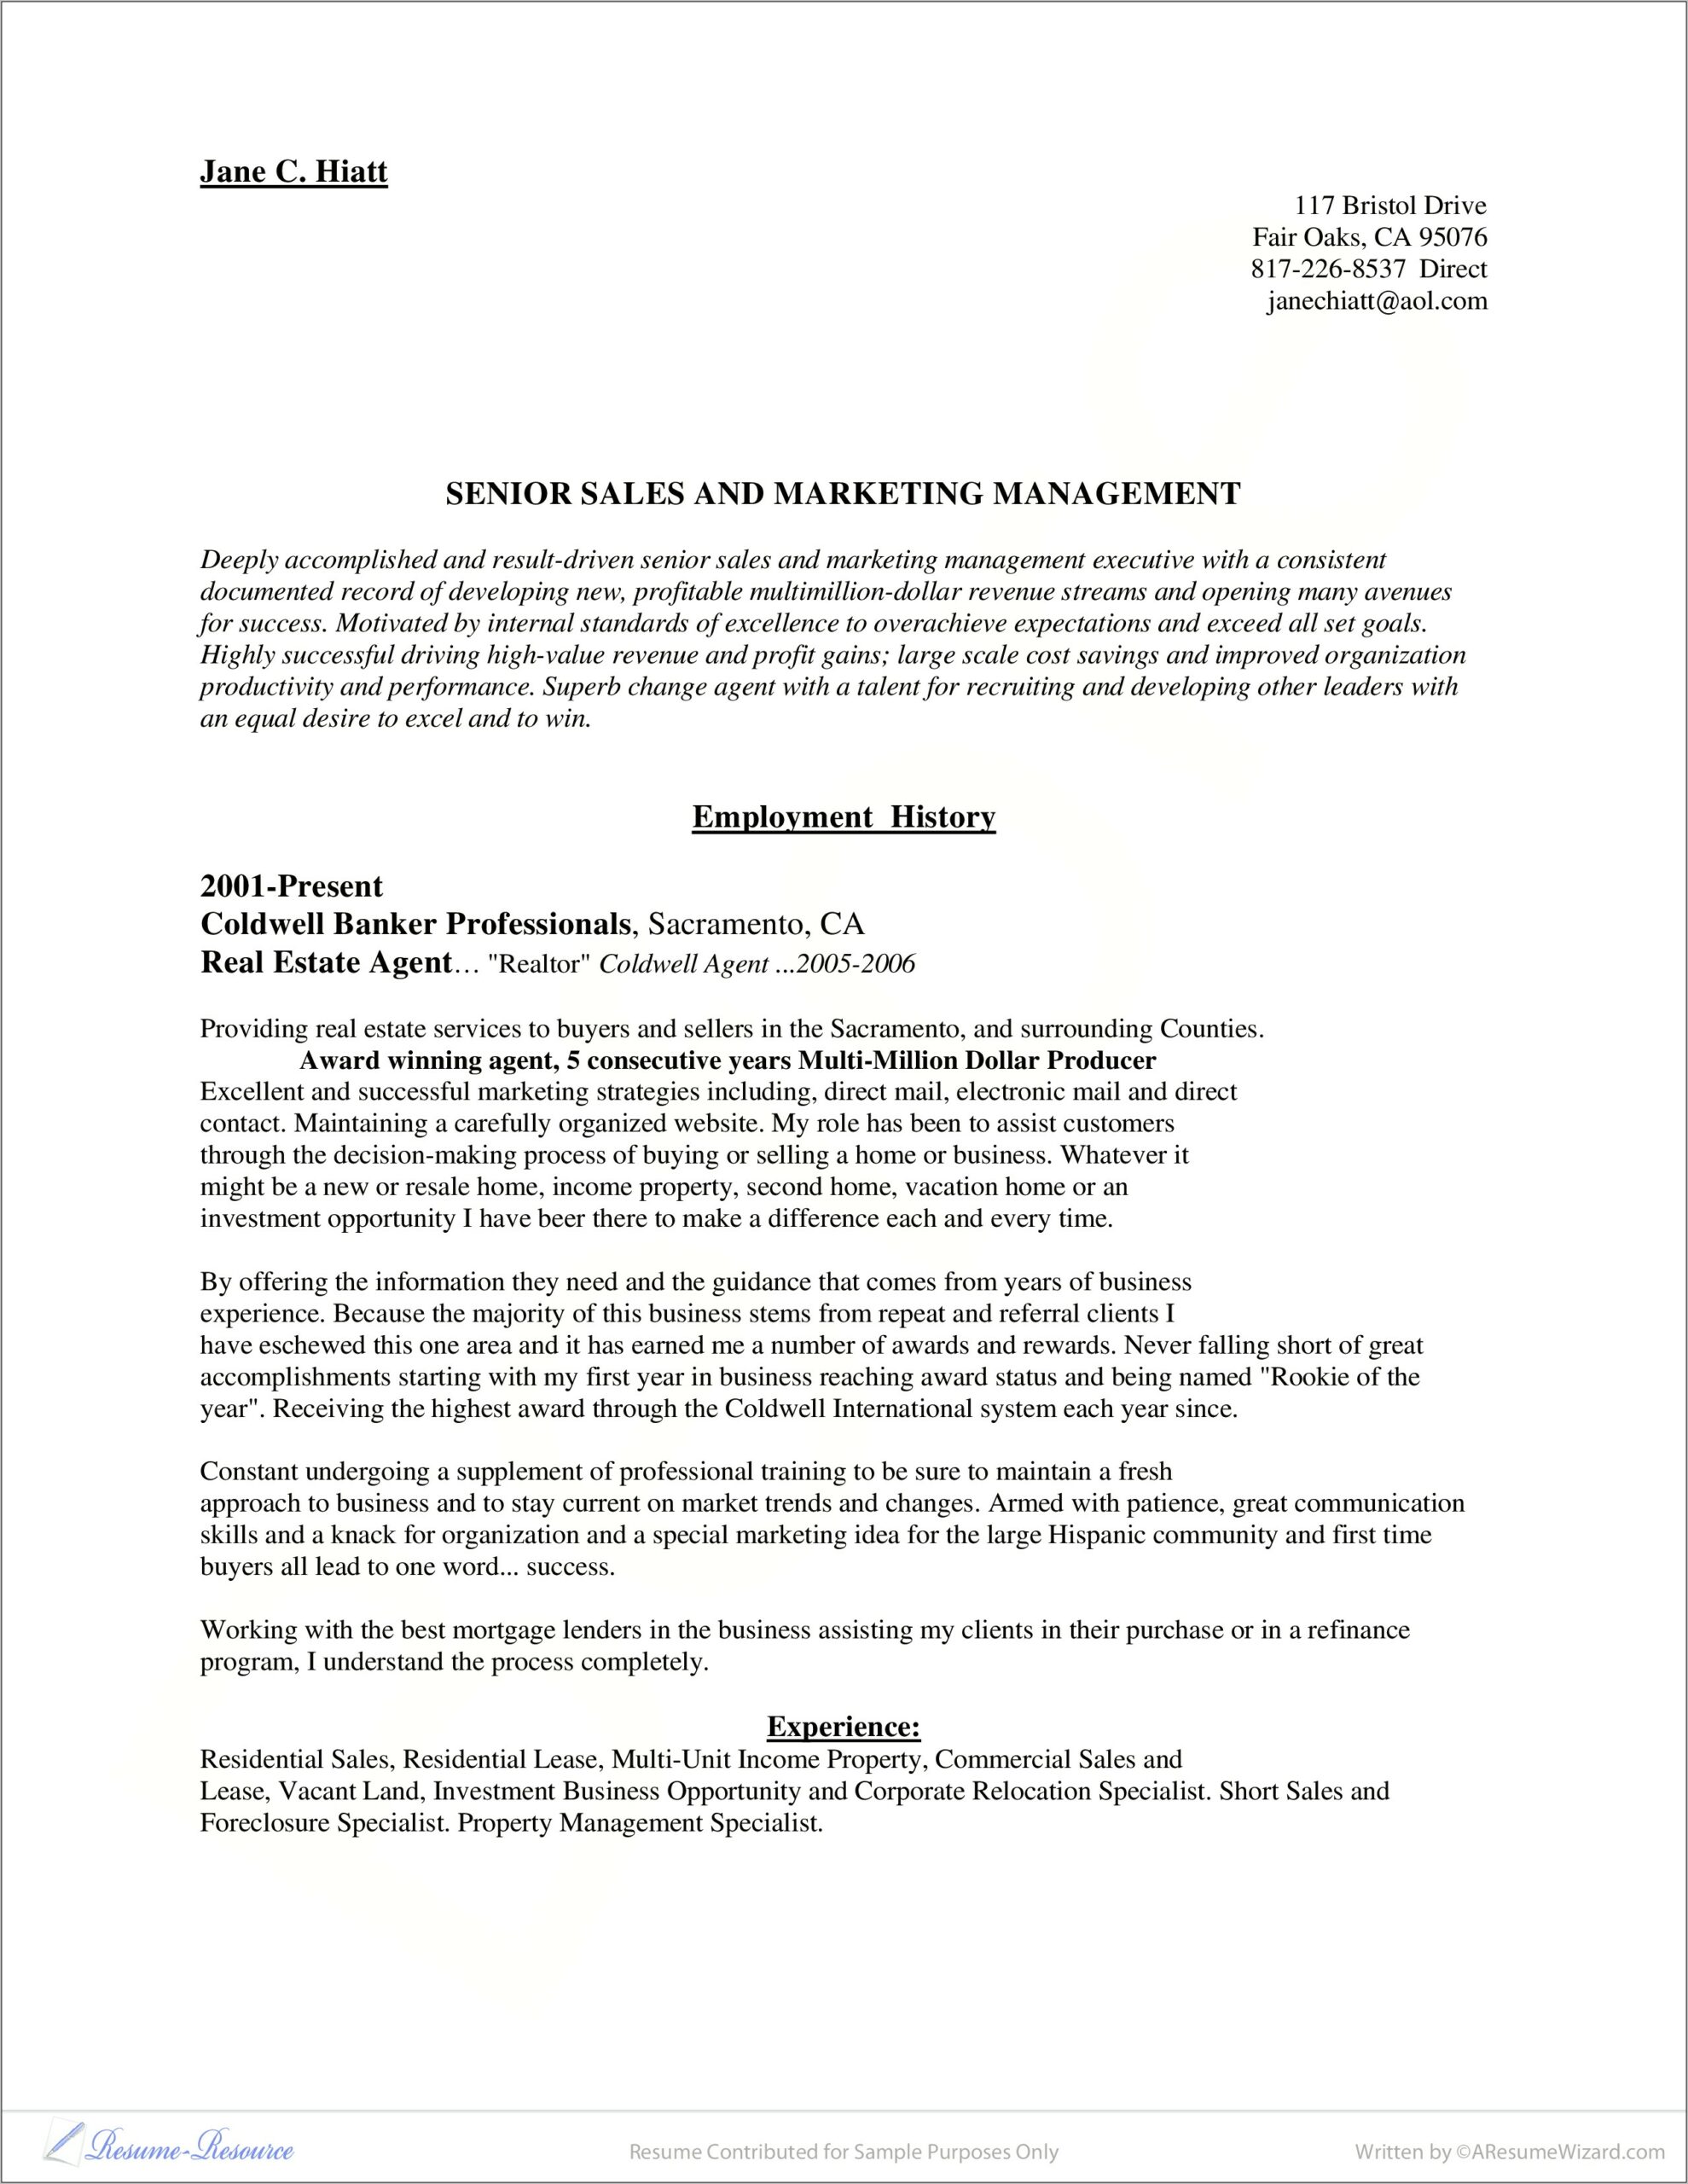 Resume Description For Real Estate Agent Marketng